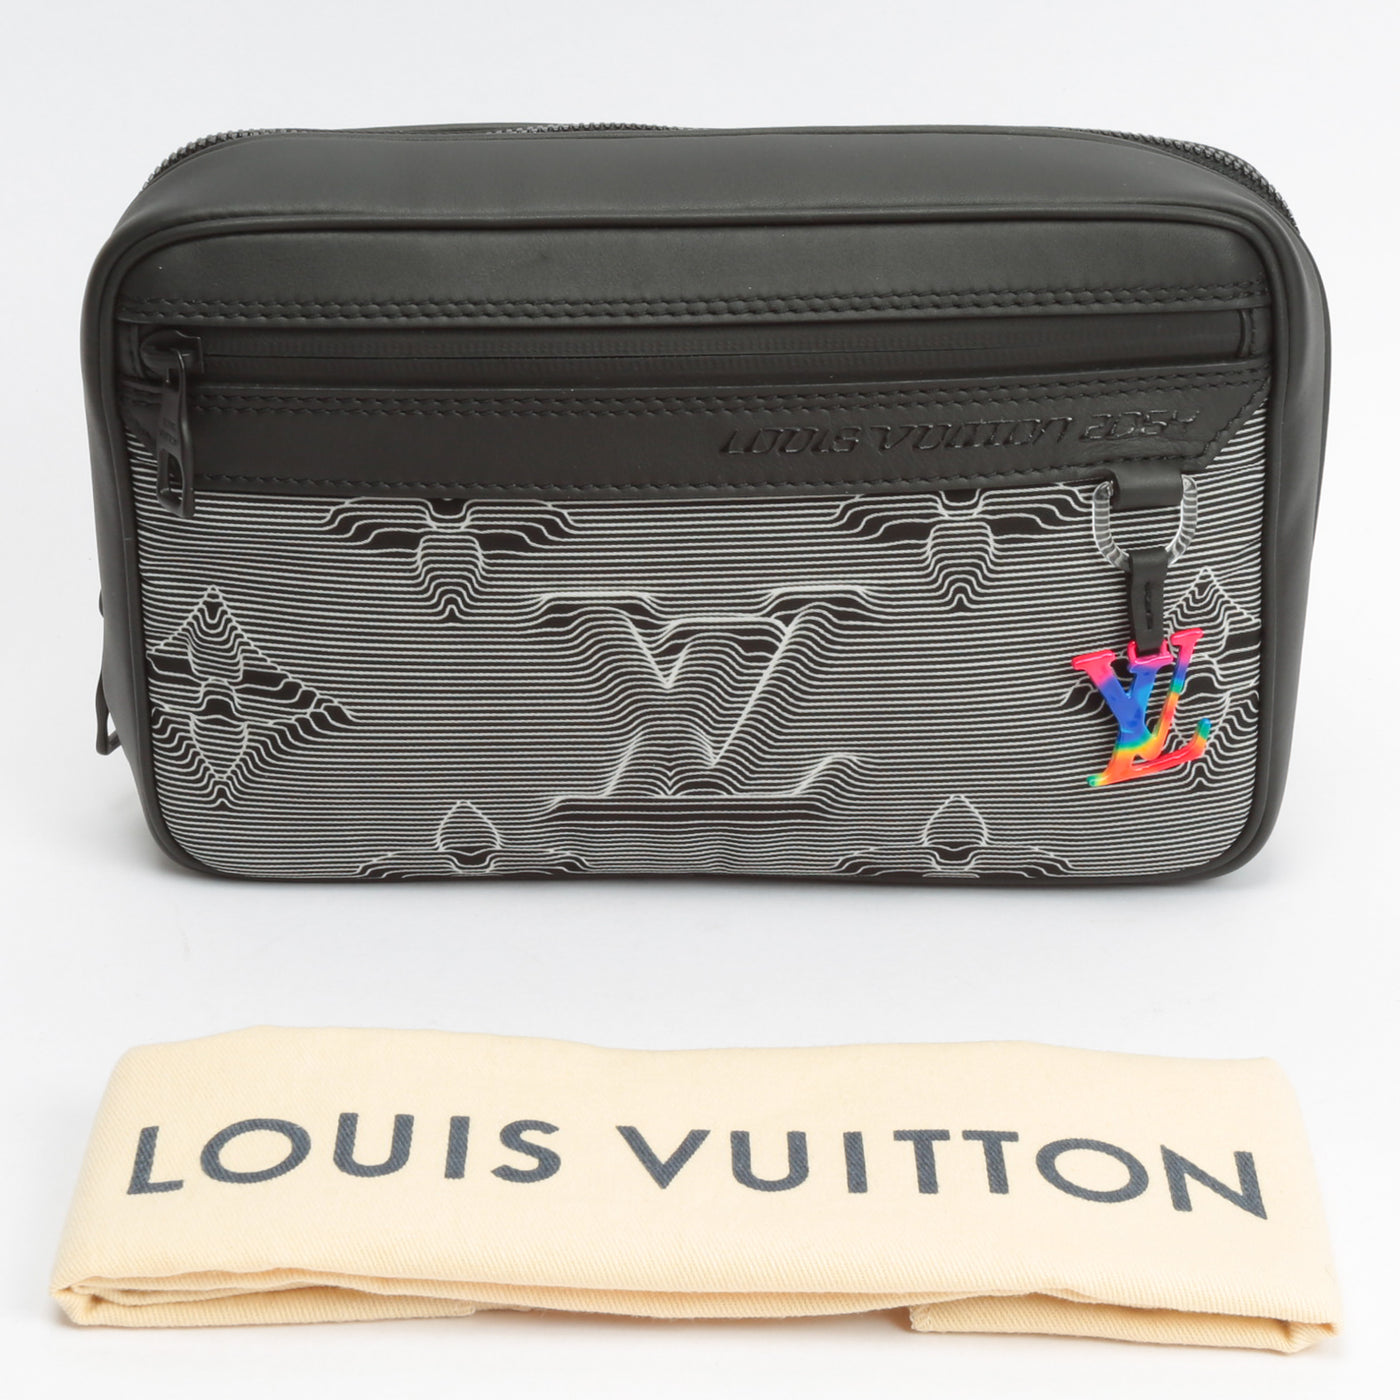 Louis Vuitton Limited Edition 2054 Monogram Messenger Bag - The Purse Ladies